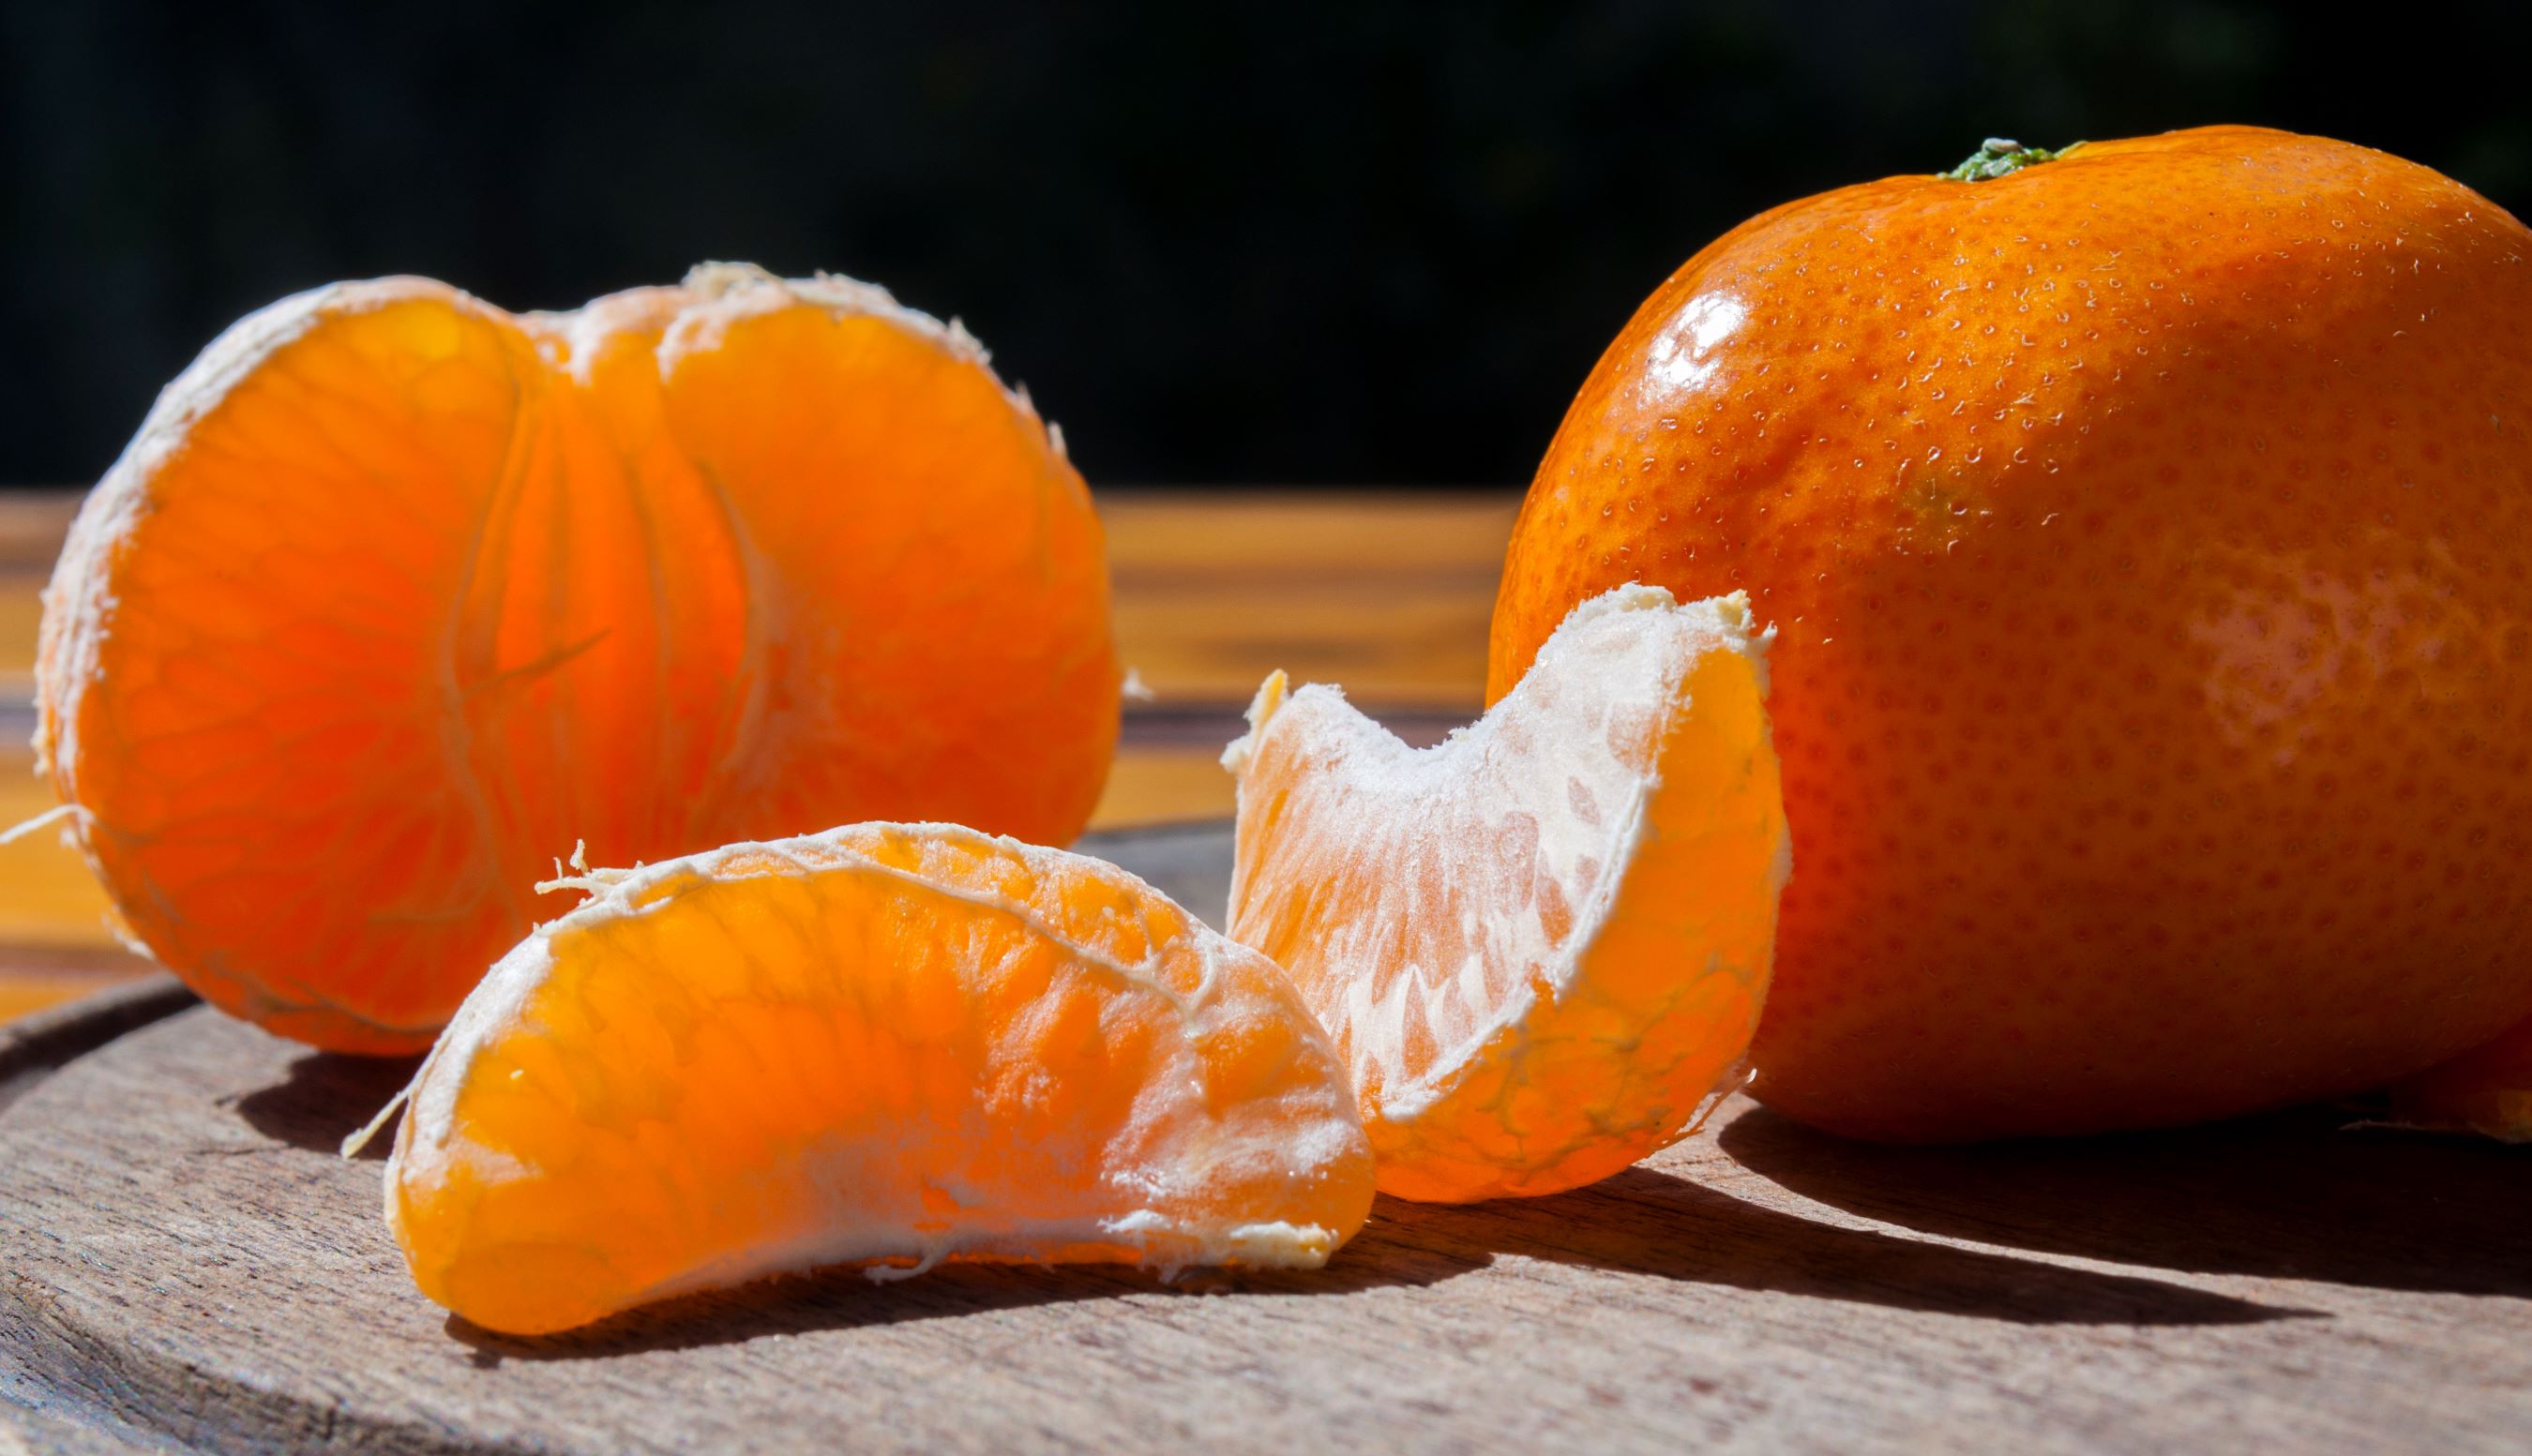 Las mandarinas australes conquistan al mundo gracias a un recambio varietal